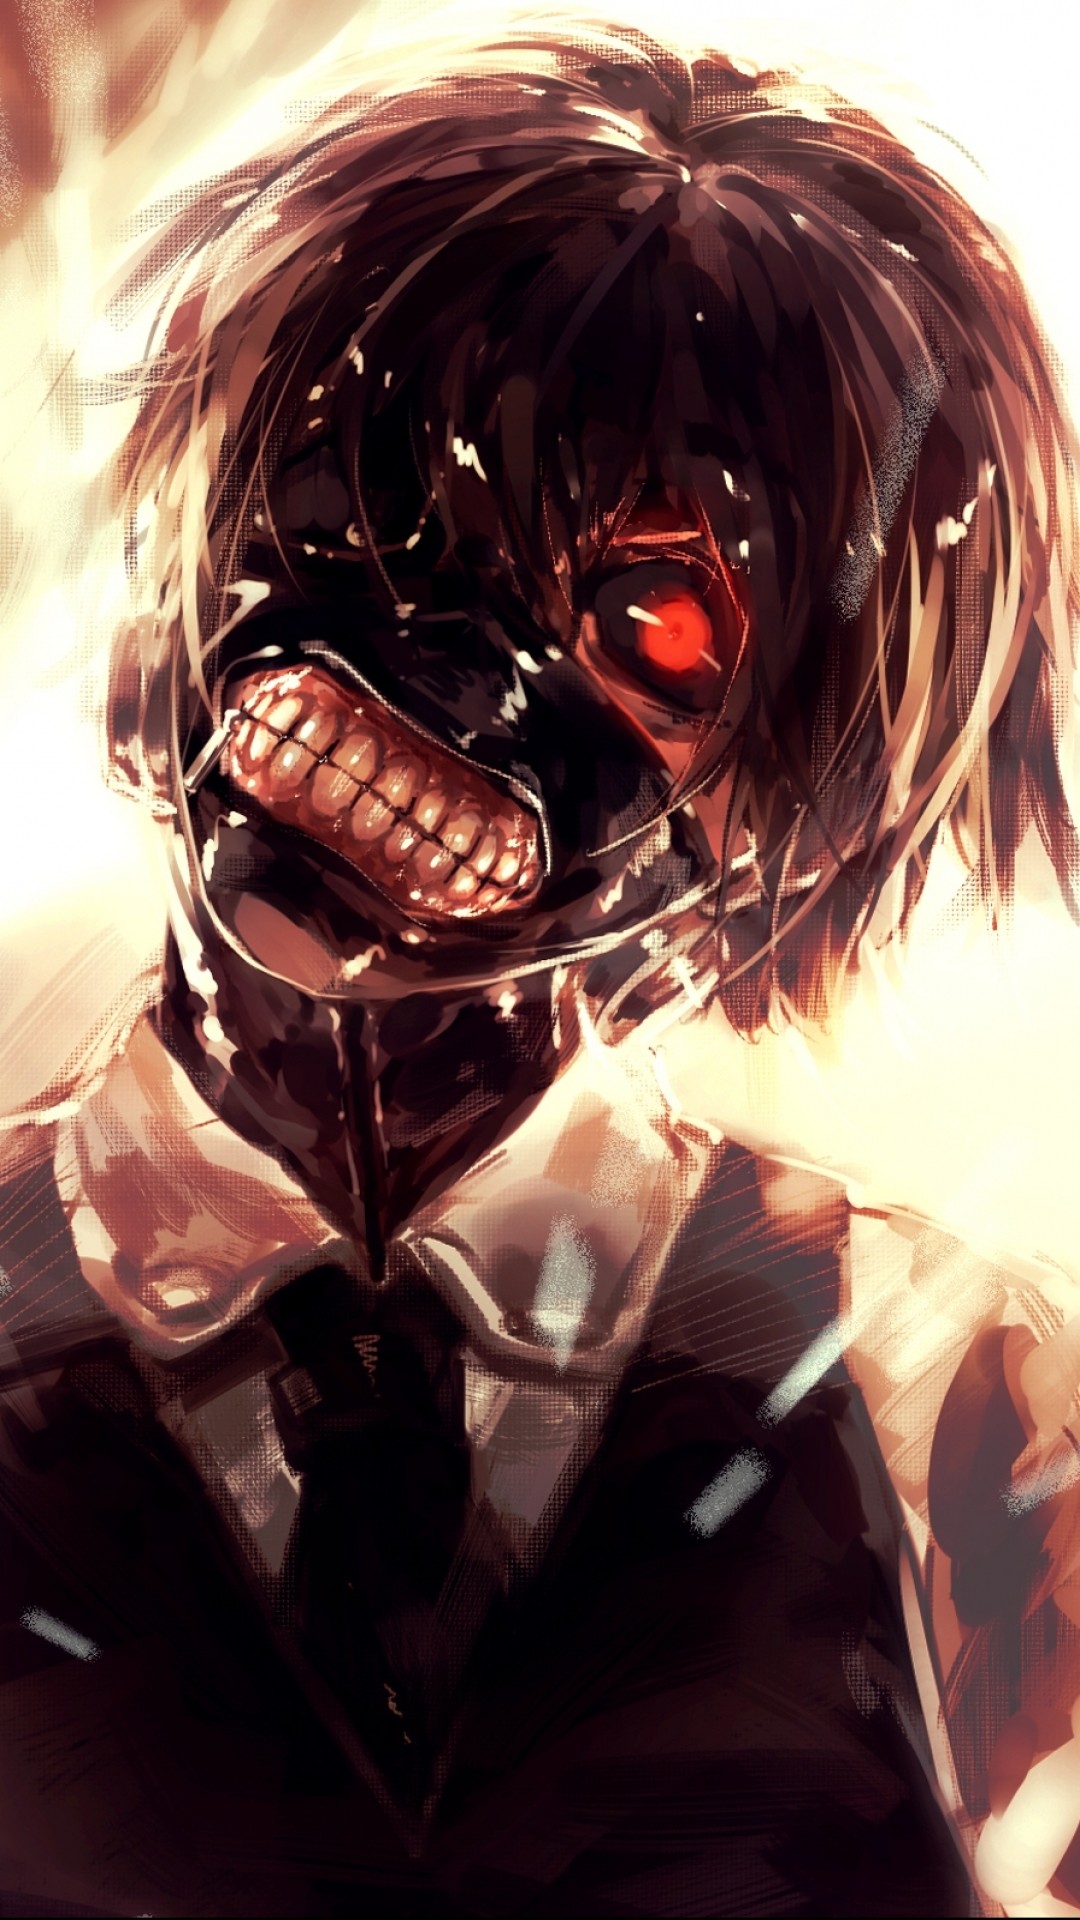 tokyo ghoul fond d'écran 1080x1920,anime,oeuvre de cg,personnage fictif,bouche,illustration